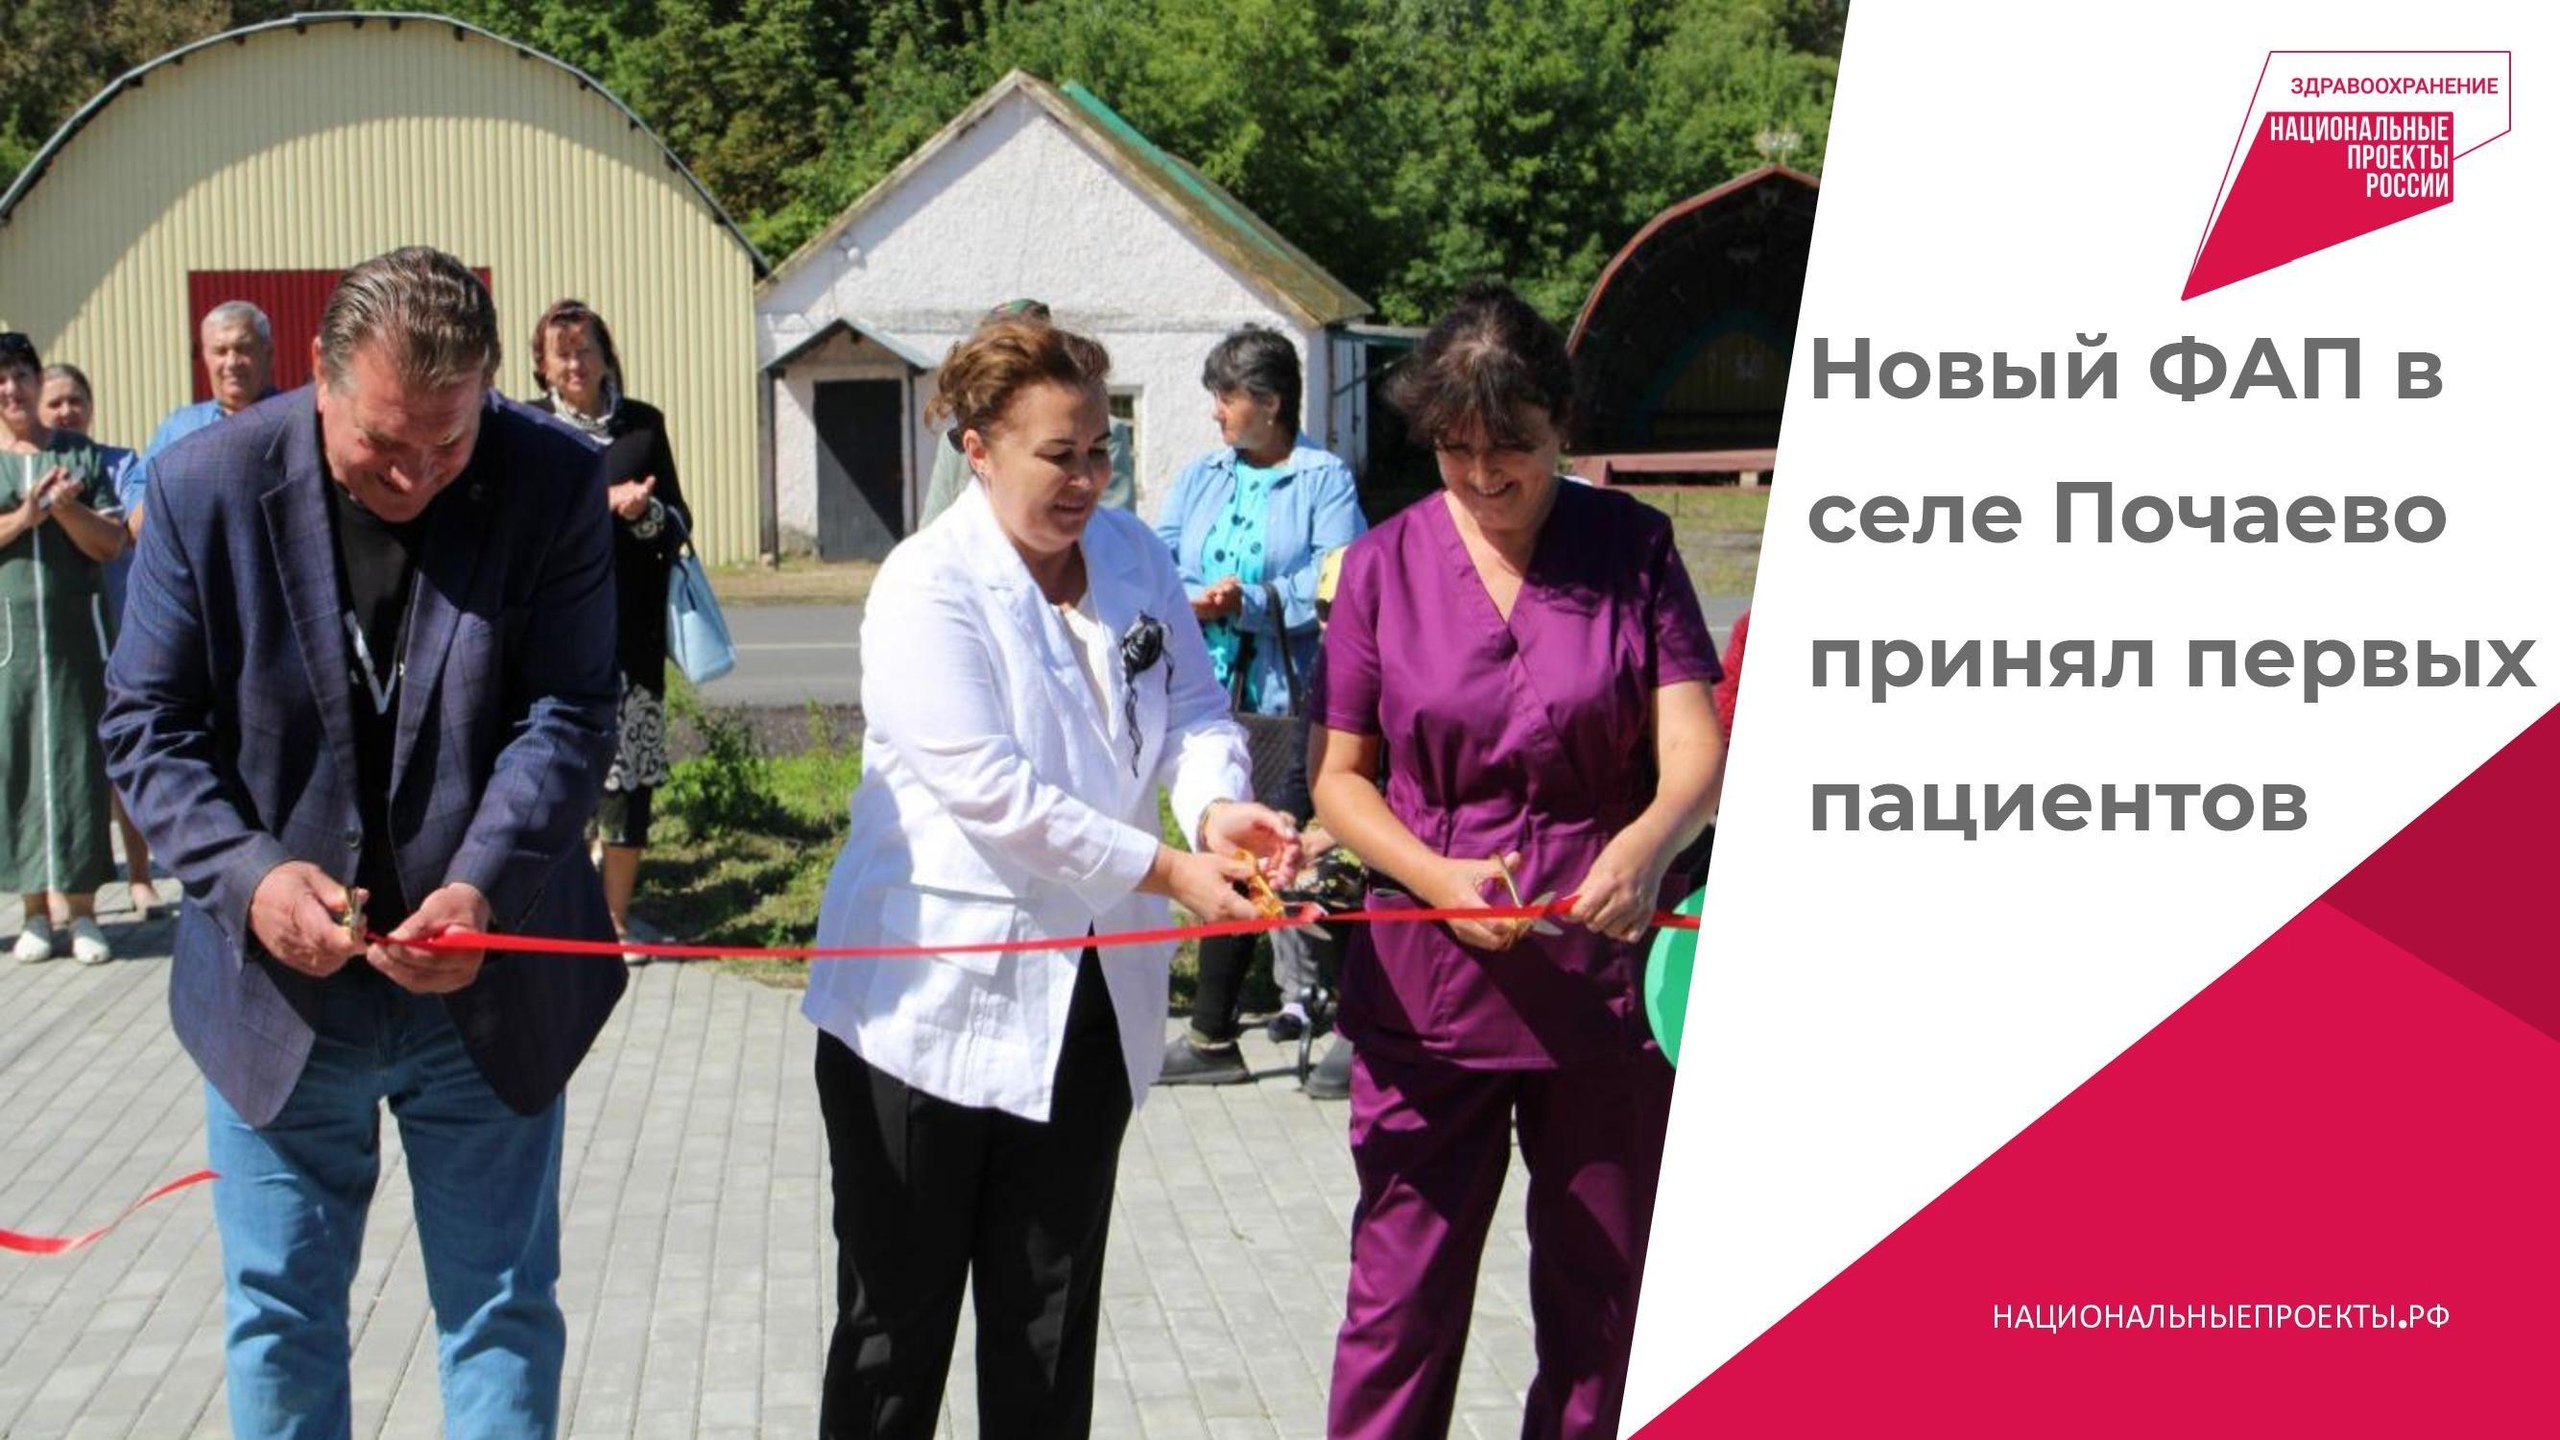 Новый ФАП в селе Почаево принял первых пациентов.